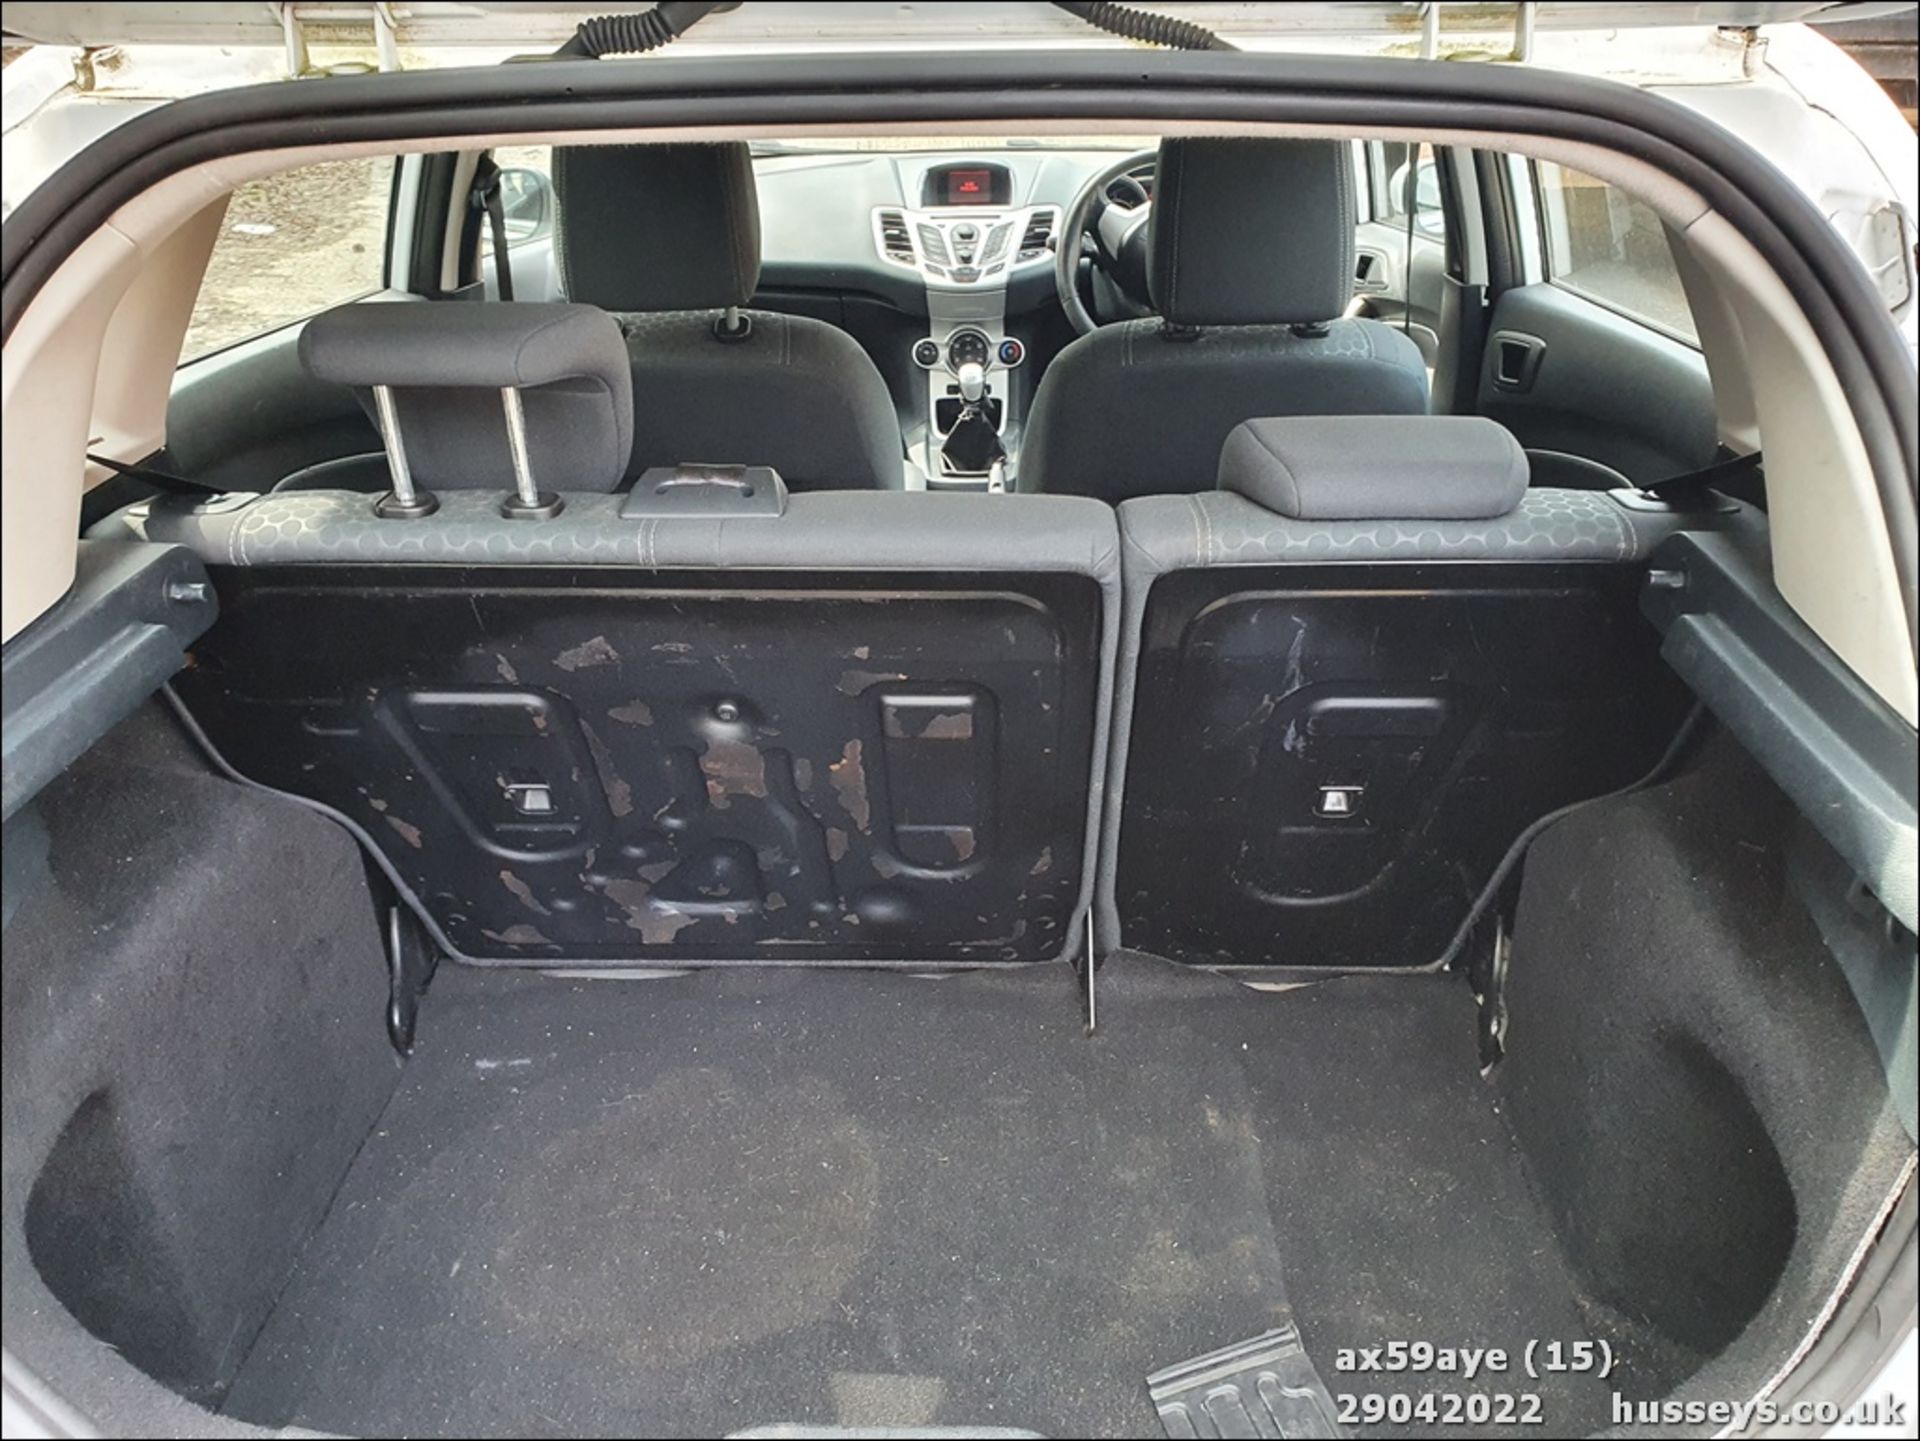 10/59 FORD FIESTA ZETEC 90 TDCI - 1560cc 5dr Hatchback (White, 146k) - Image 15 of 23